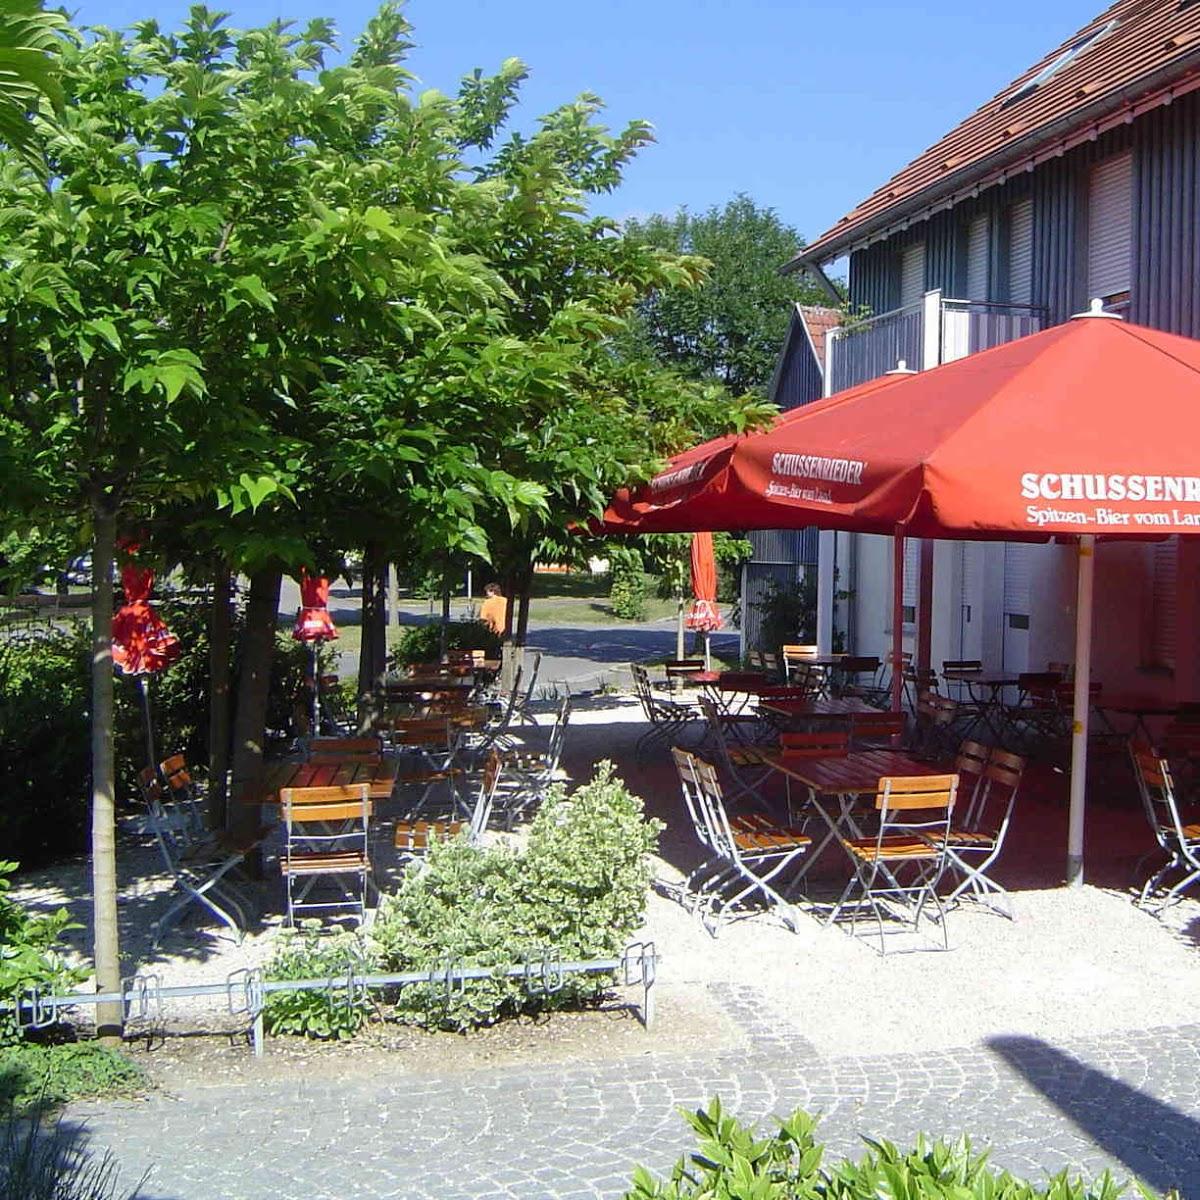 Restaurant "Hotel Wirtshaus Krone" in Friedrichshafen